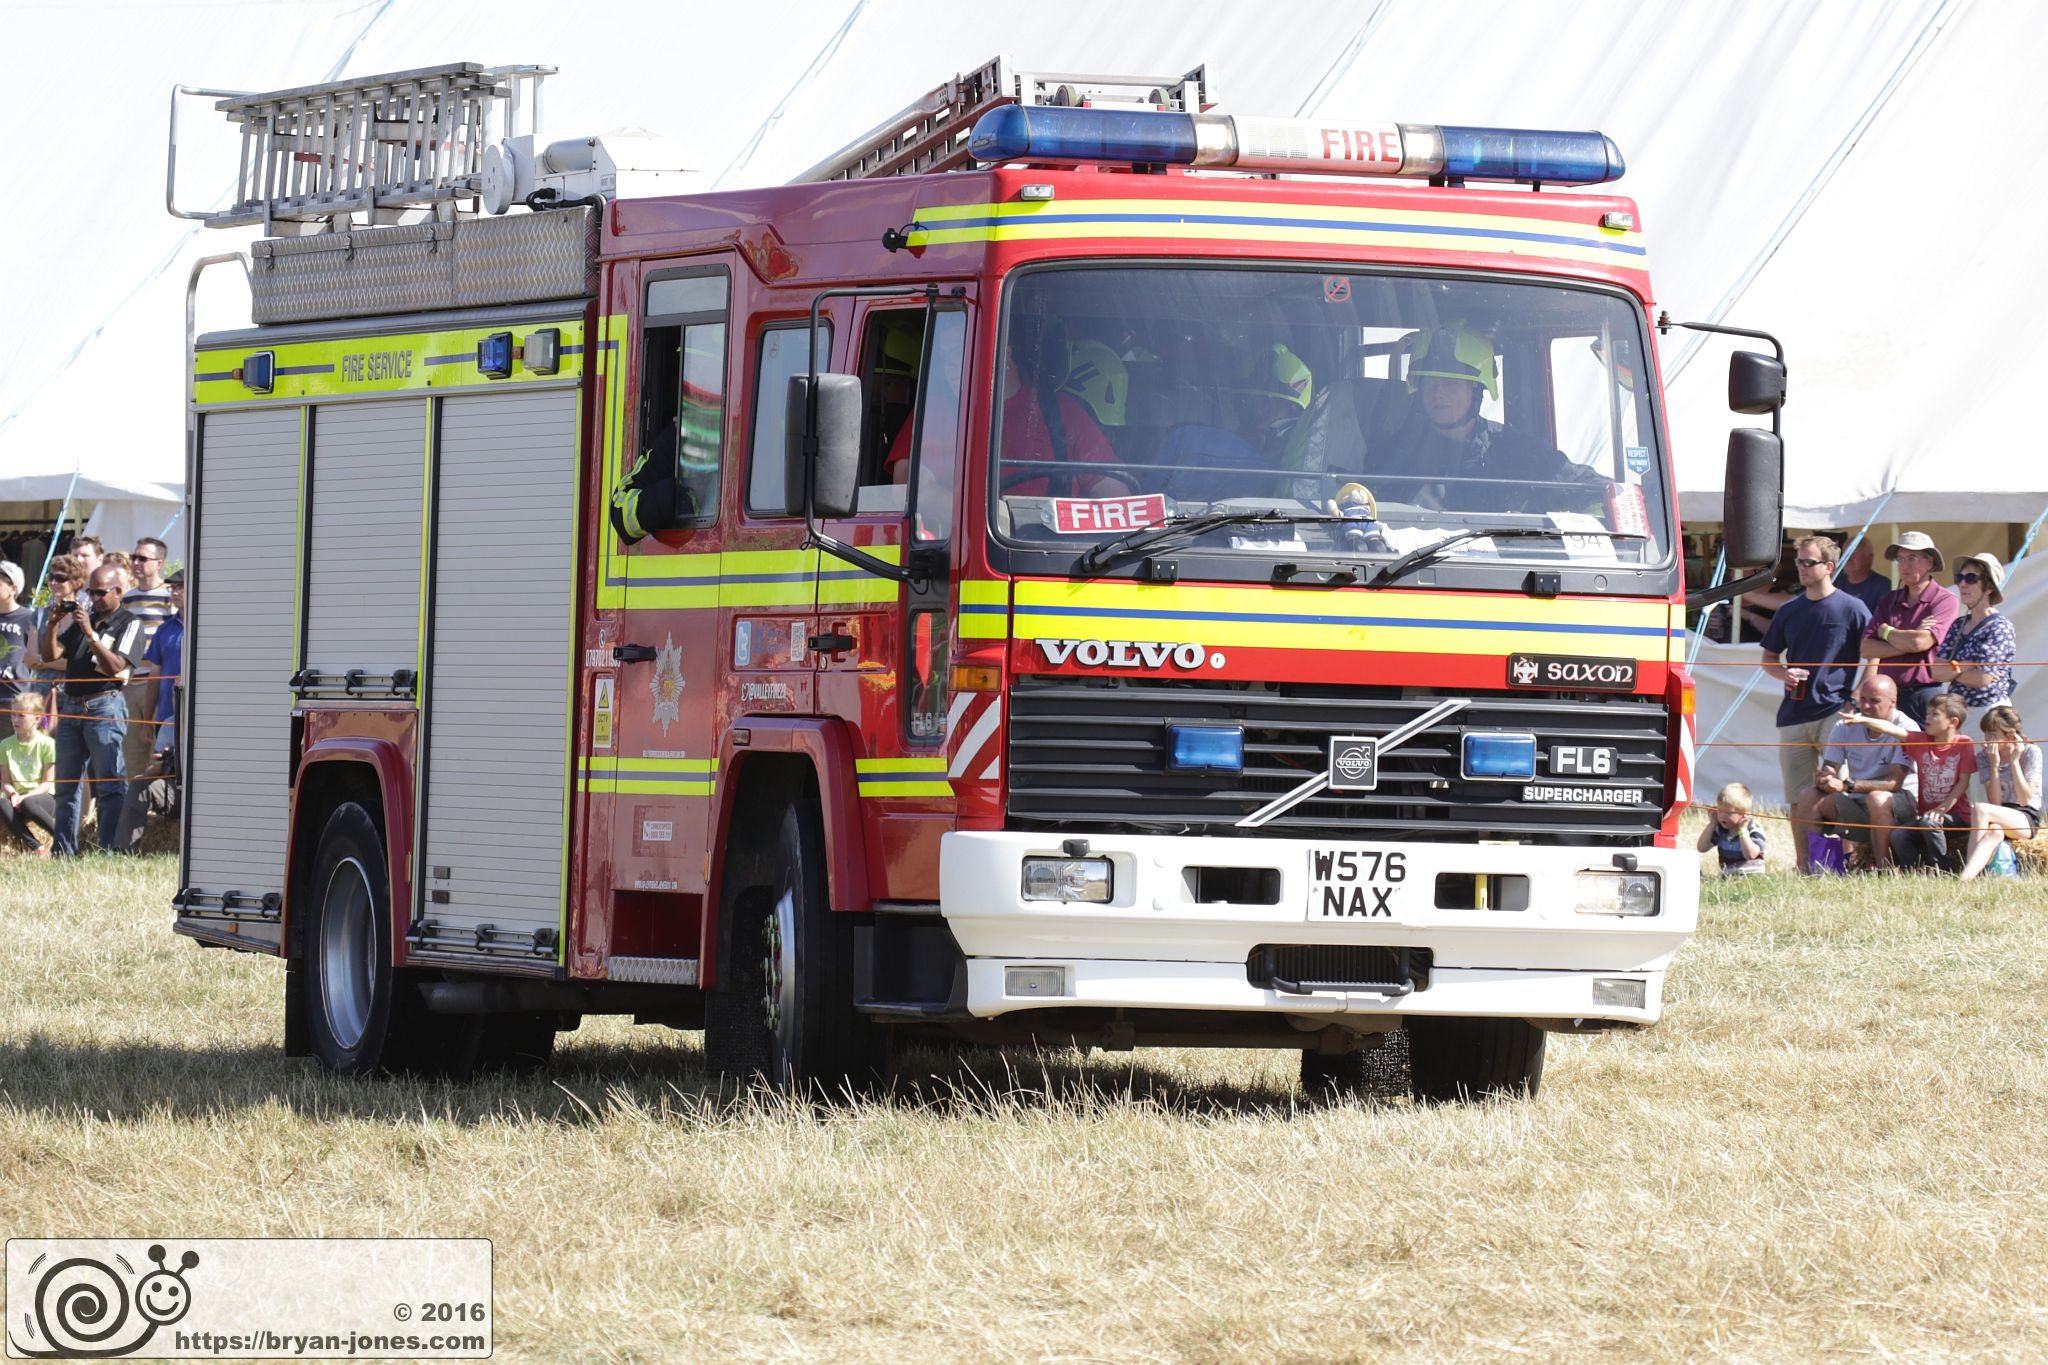 2016 Odiham Fire Show 07-Aug-2016. Volvo FL6 Saxon fire appliance W576NAX